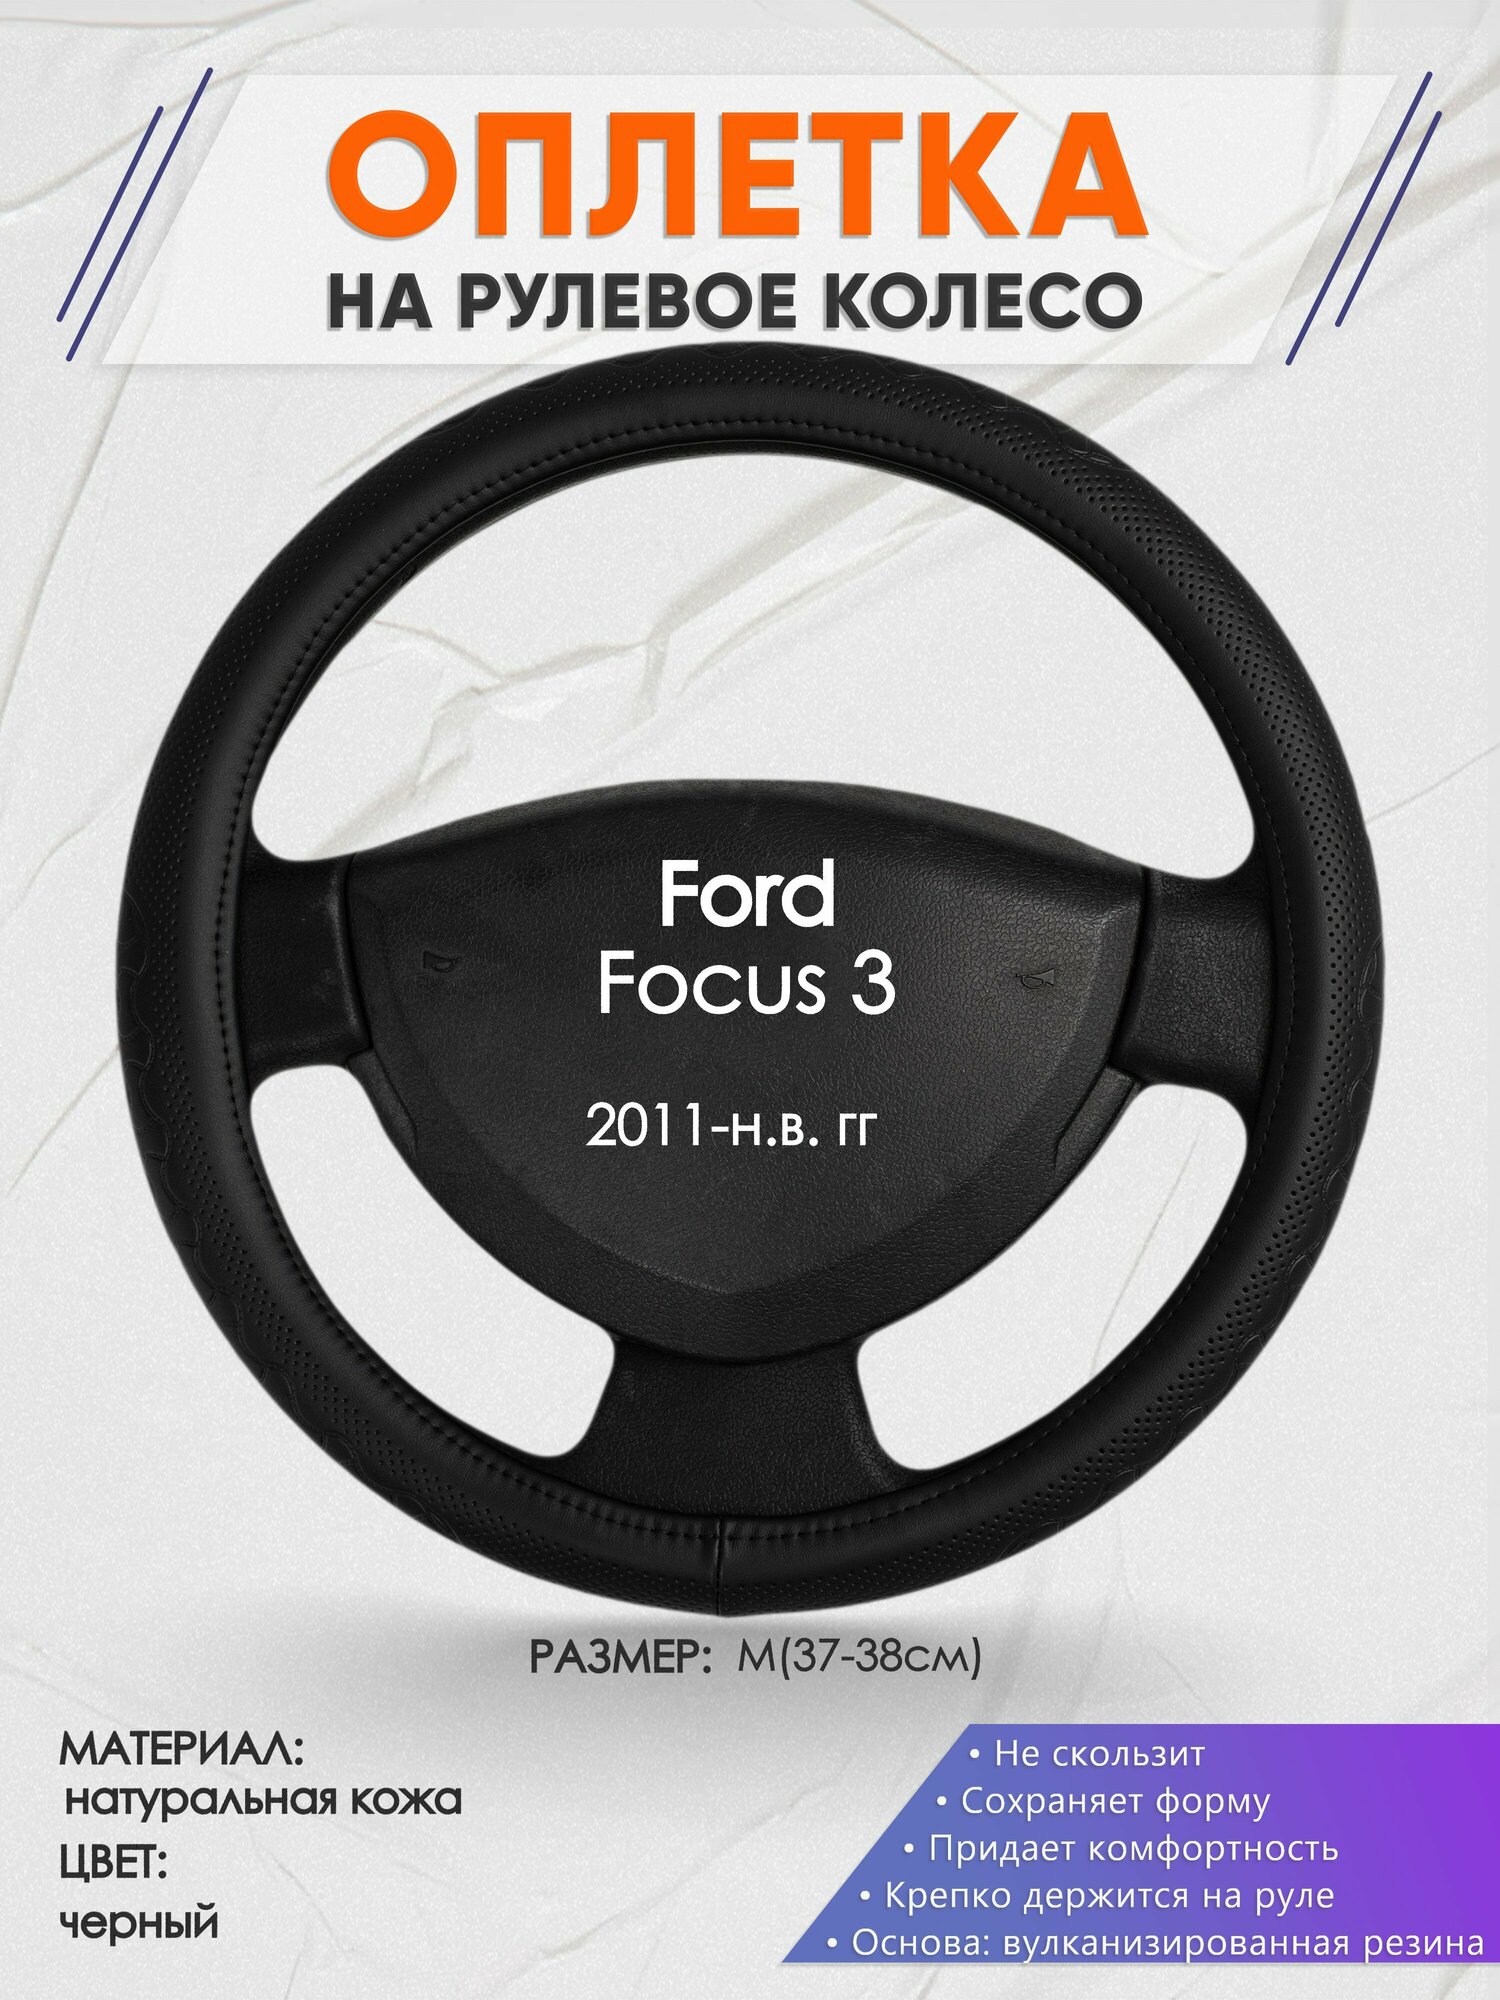 Оплетка на руль для Ford Focus 3(Форд Фокус 3) 2011-н. в, M(37-38см), Натуральная кожа 25